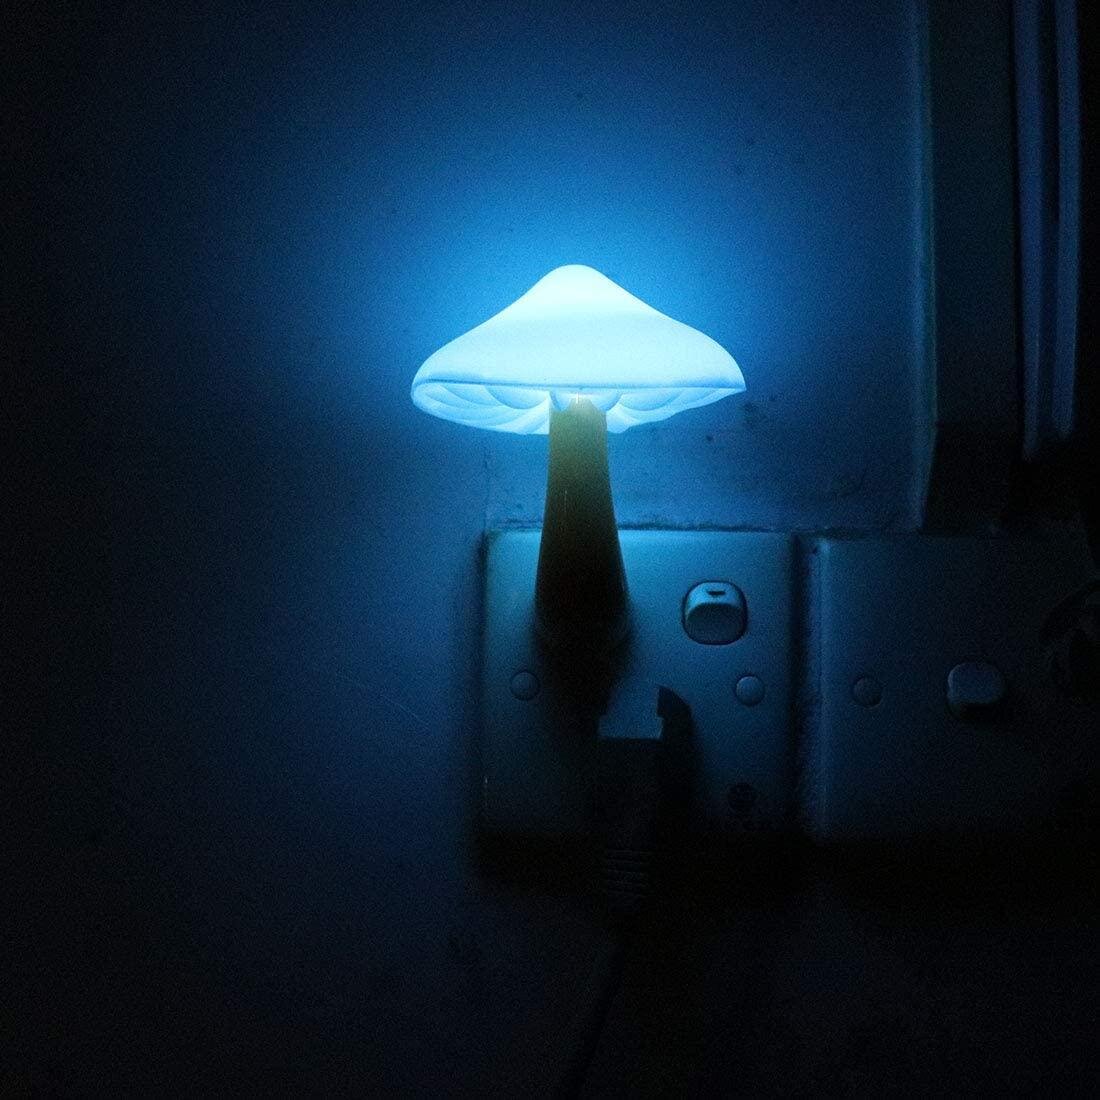 Color Rainbow Mushroom LED Night Light Plug-in Wall Lamp Bathroom Bedroom Gift